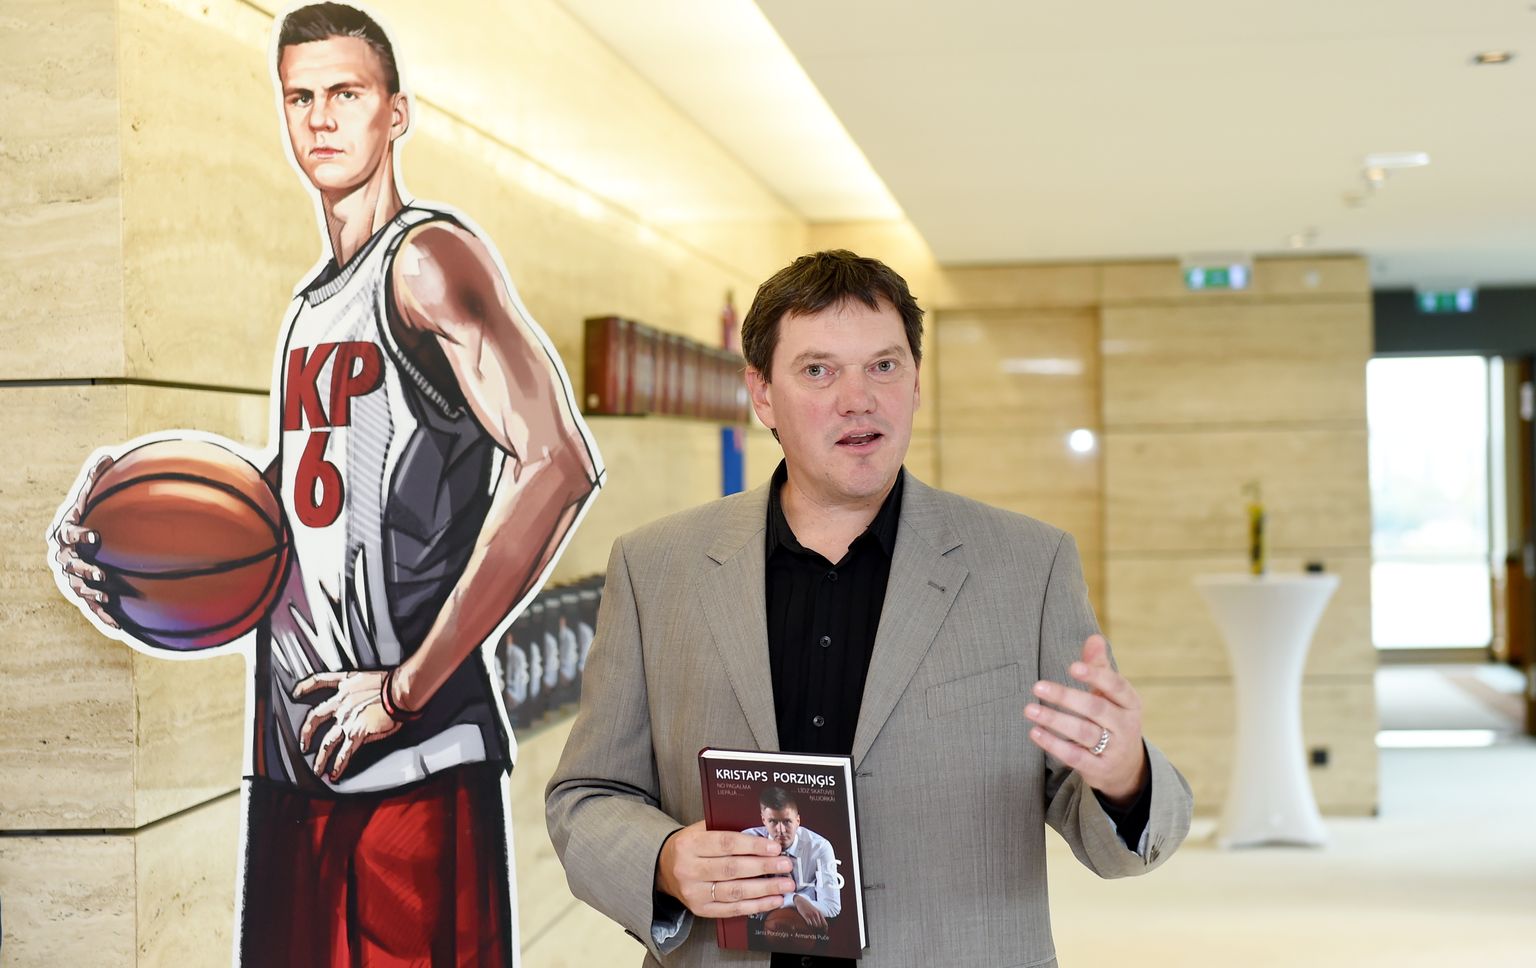 Grāmatas autori Jānis Porziņģis un Armands Puče piedalās grāmatas par latviešu basketbolistu Kristapu Porziņģi "Brālis" prezentācijas pasākumā.